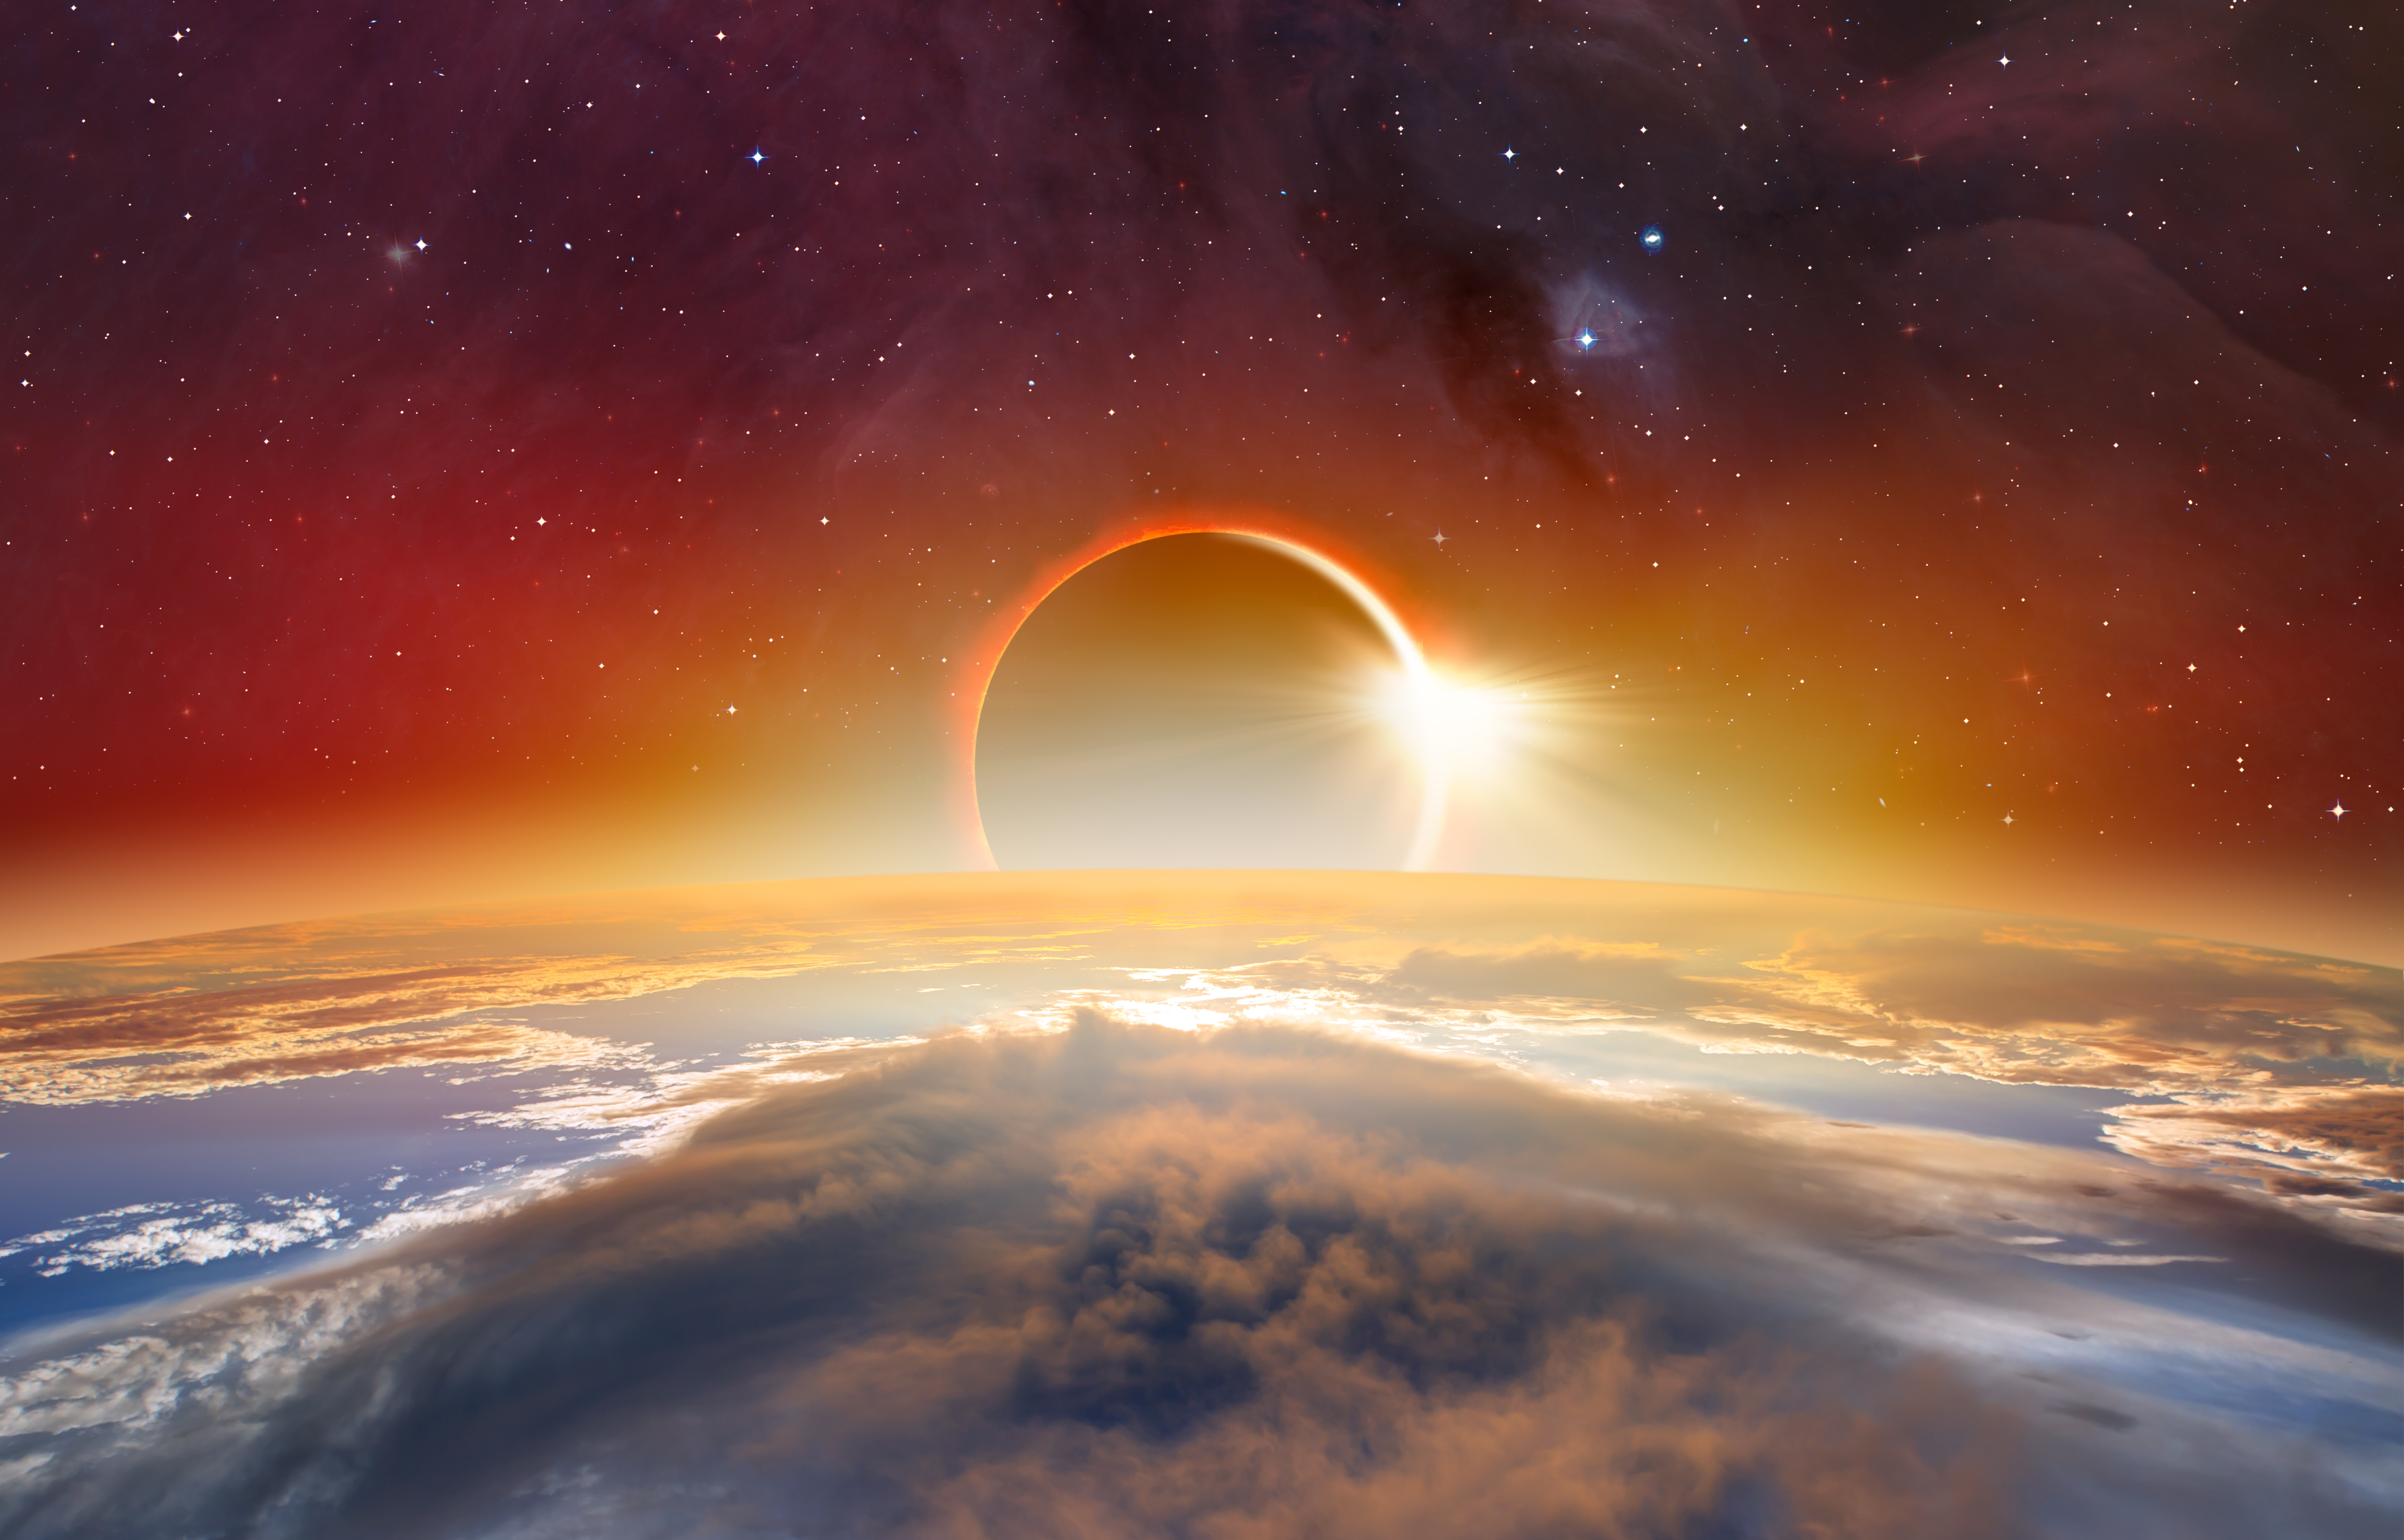 La Nasa n'a pas encore dévoilé la date de lancement de sa prochaine plateforme de streaming Nasa+. Illustration d'une éclipse du soleil d'après des éléments fournis par la Nasa. © muratart, Adobe Stock